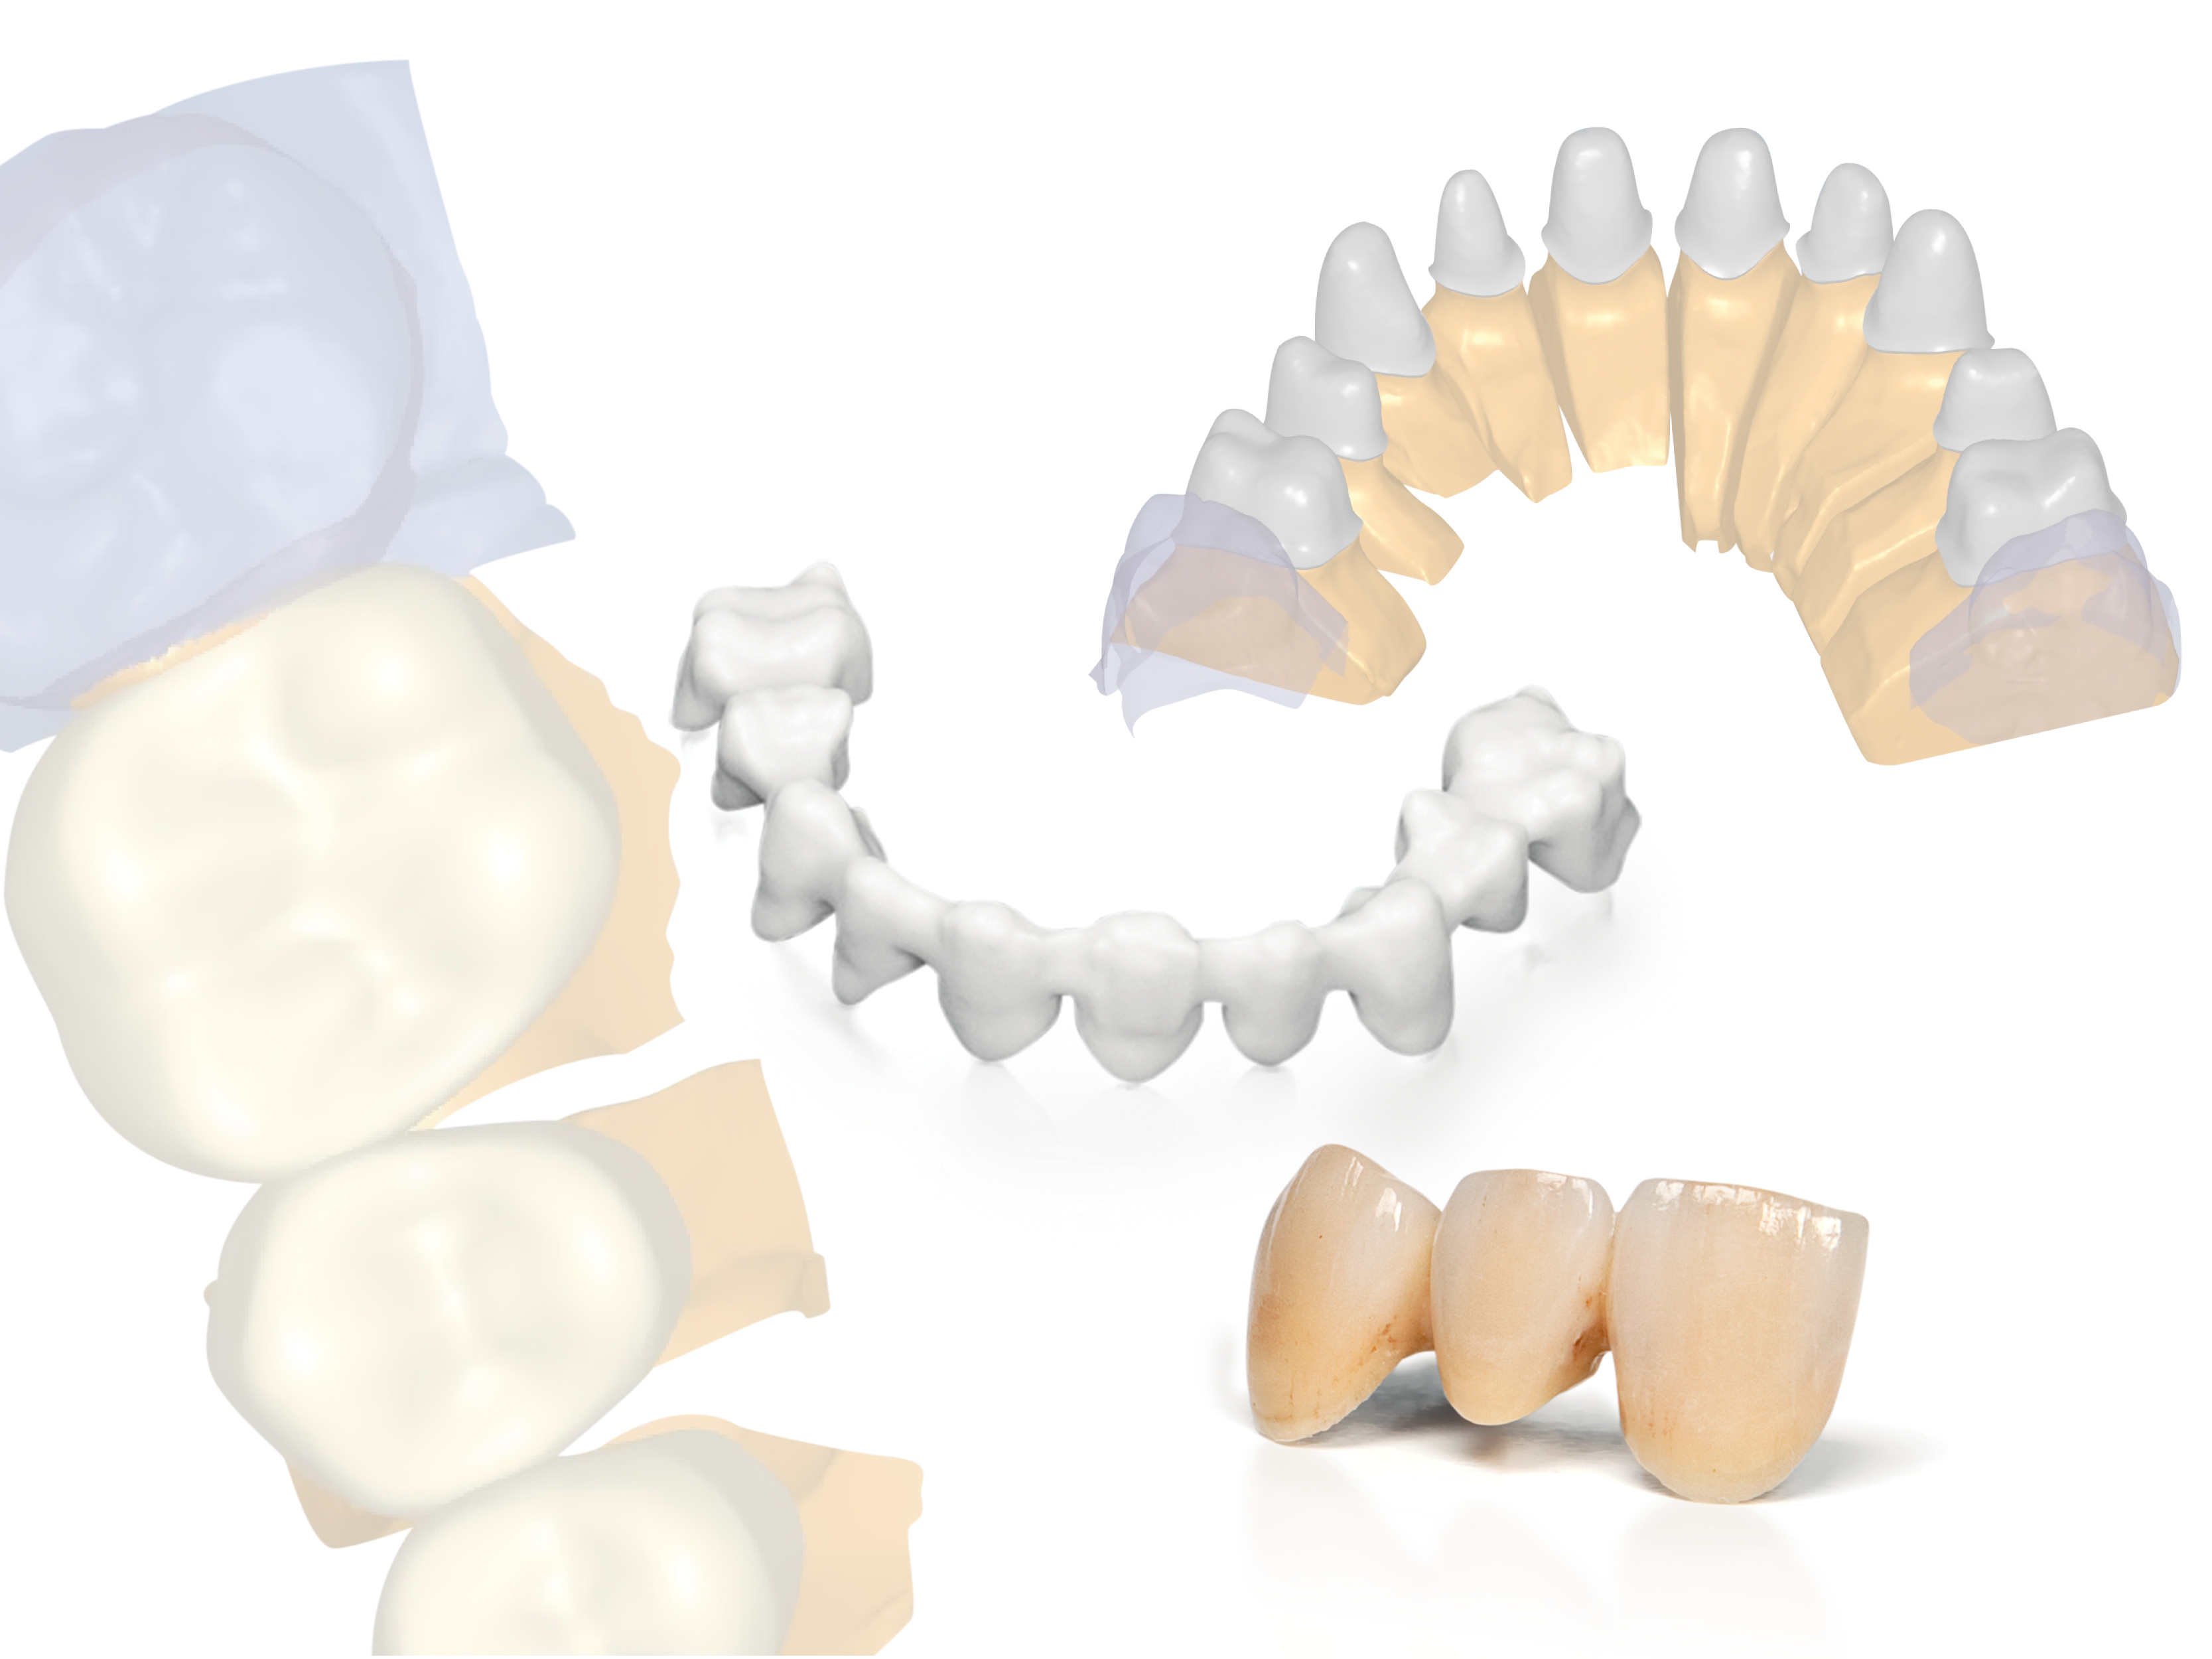 Planmeca präsentiert neue offene CAD/CAM-Lösungen für Zahnärzte und Dentallabore